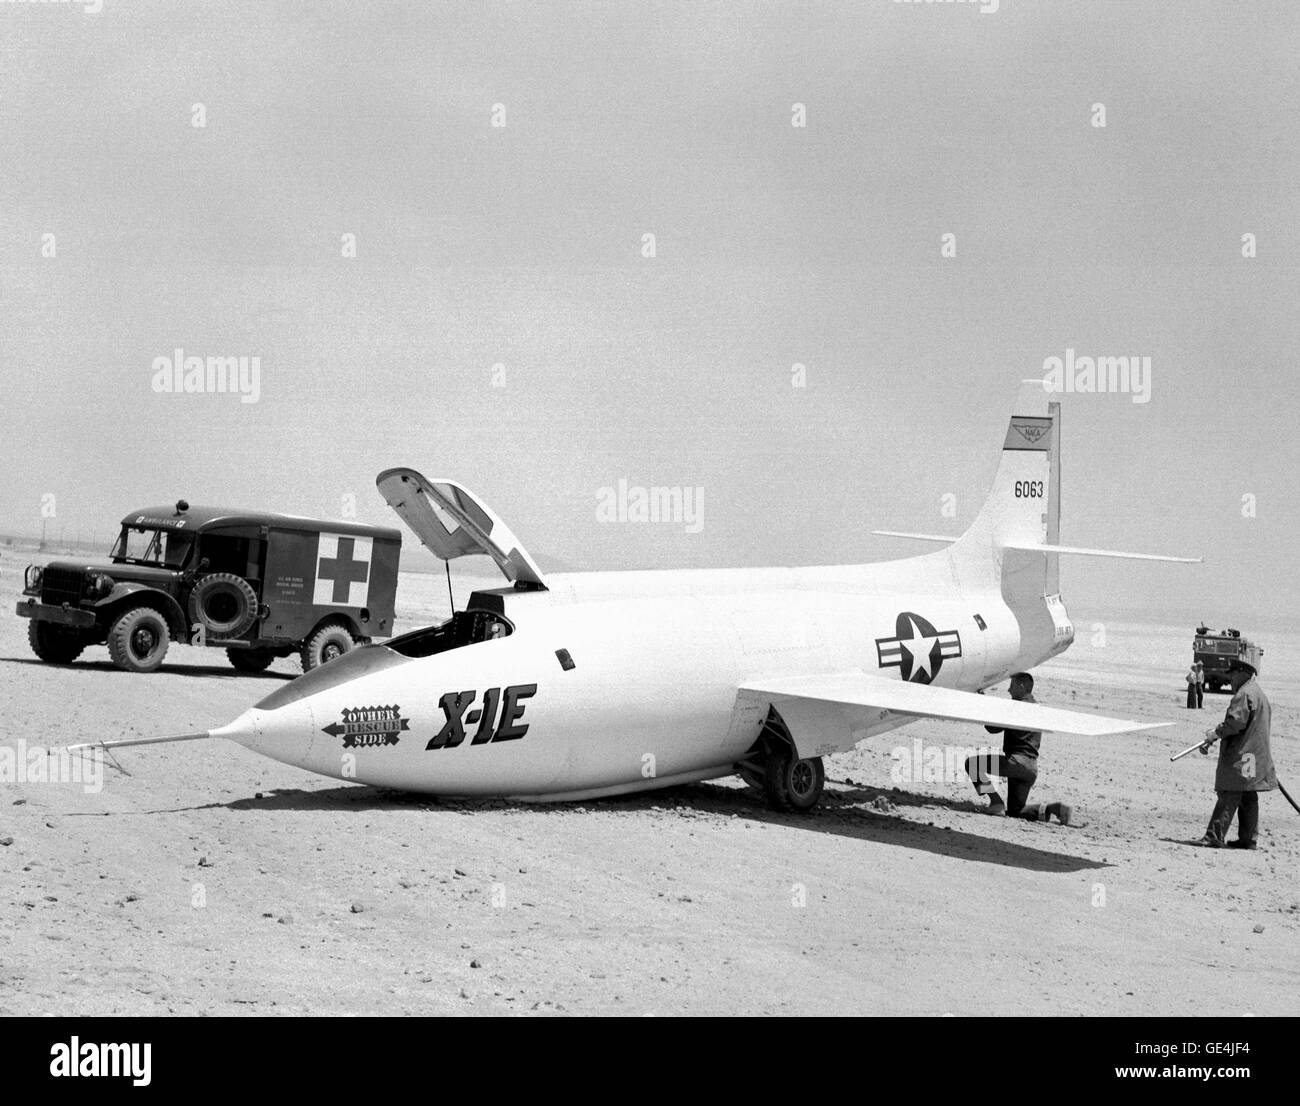 (18 Juni 1956) Dieses Foto wurde 18. Juni 1956 auf Rogers Dry Lake Bett nach Flug 7 von der Bell Aircraft Corporation X-1E mit NACA High-Speed Flight Station Testpilot Joseph Joe Walker an den Reglern aufgenommen. Die erste Generation X-1s waren bekannt für Nase Ausrüstung Ausfälle und der X-1E war keine Ausnahme. Hartplatz, bei der Landung in der Regel führte zu einem eingestürzten Bugfahrwerk. Der Schaden war ernst selten aber mehrere Tage Ausfallzeit zur Reparatur erforderlich.  Bild-Nr.: E-2369 Stockfoto